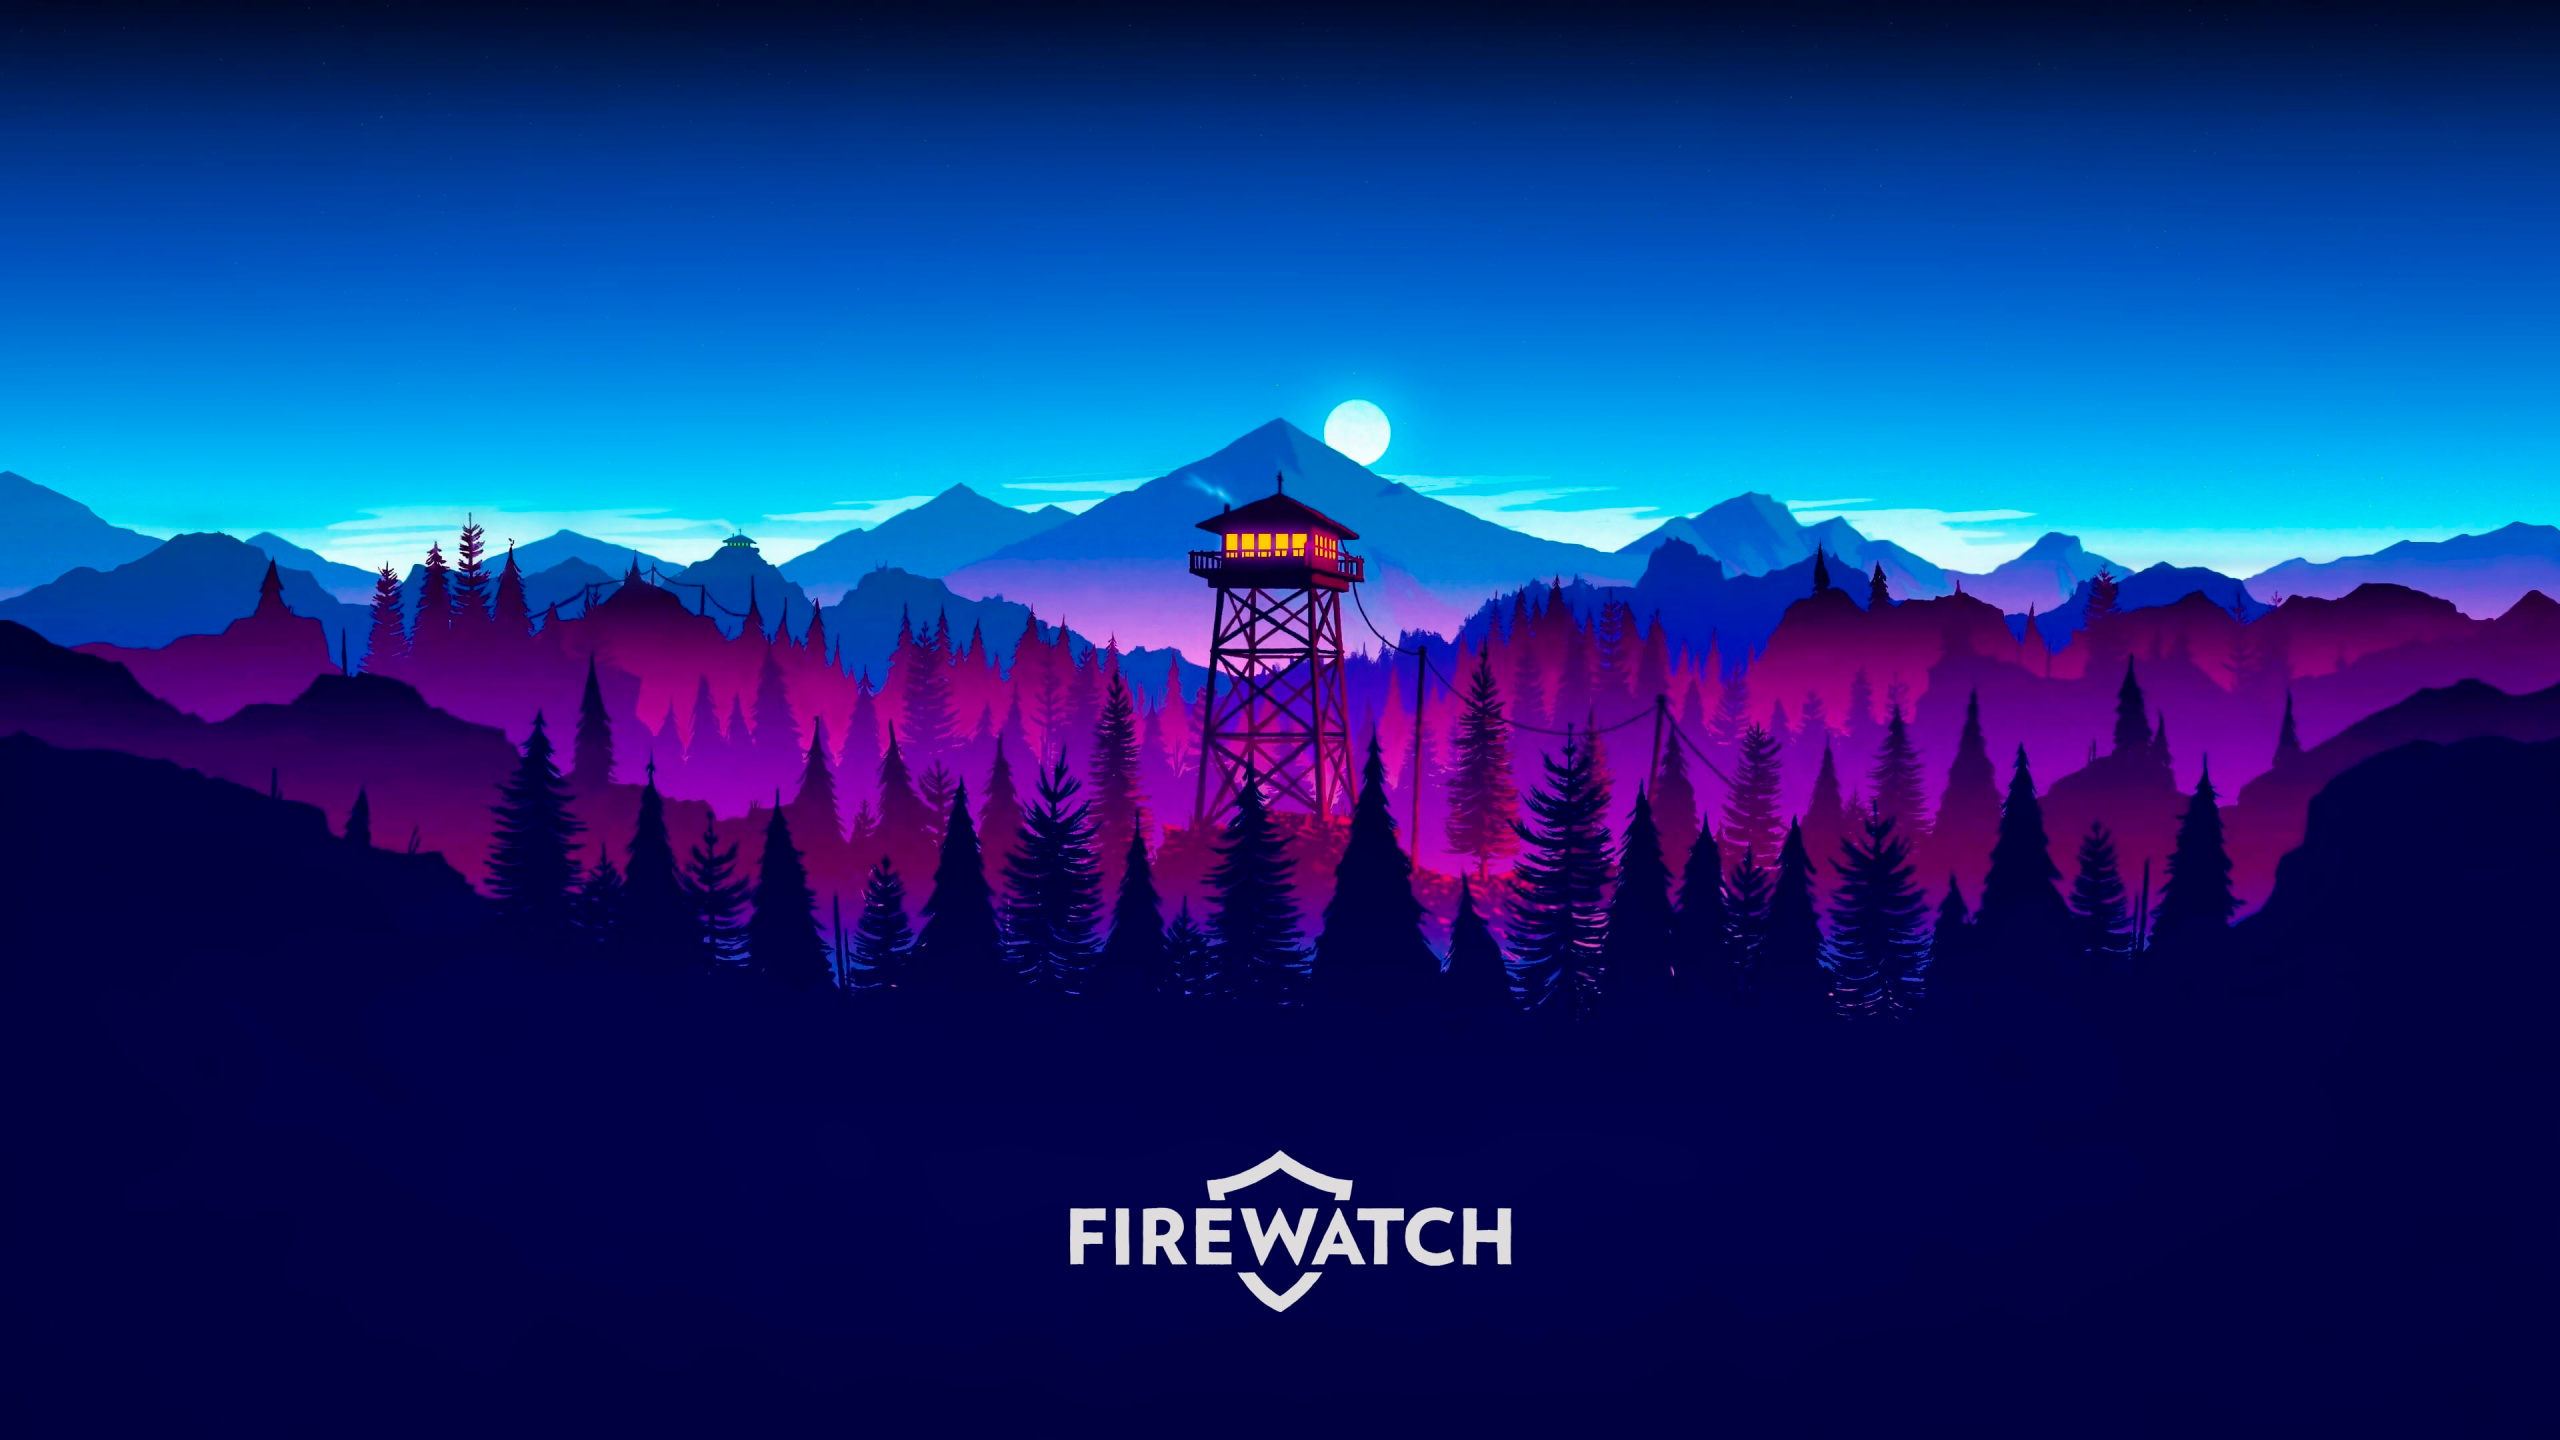 莫莉·莫斯firewatch, 艺术, 数码艺术, 冒险的游戏, 气氛 壁纸 2560x1440 允许